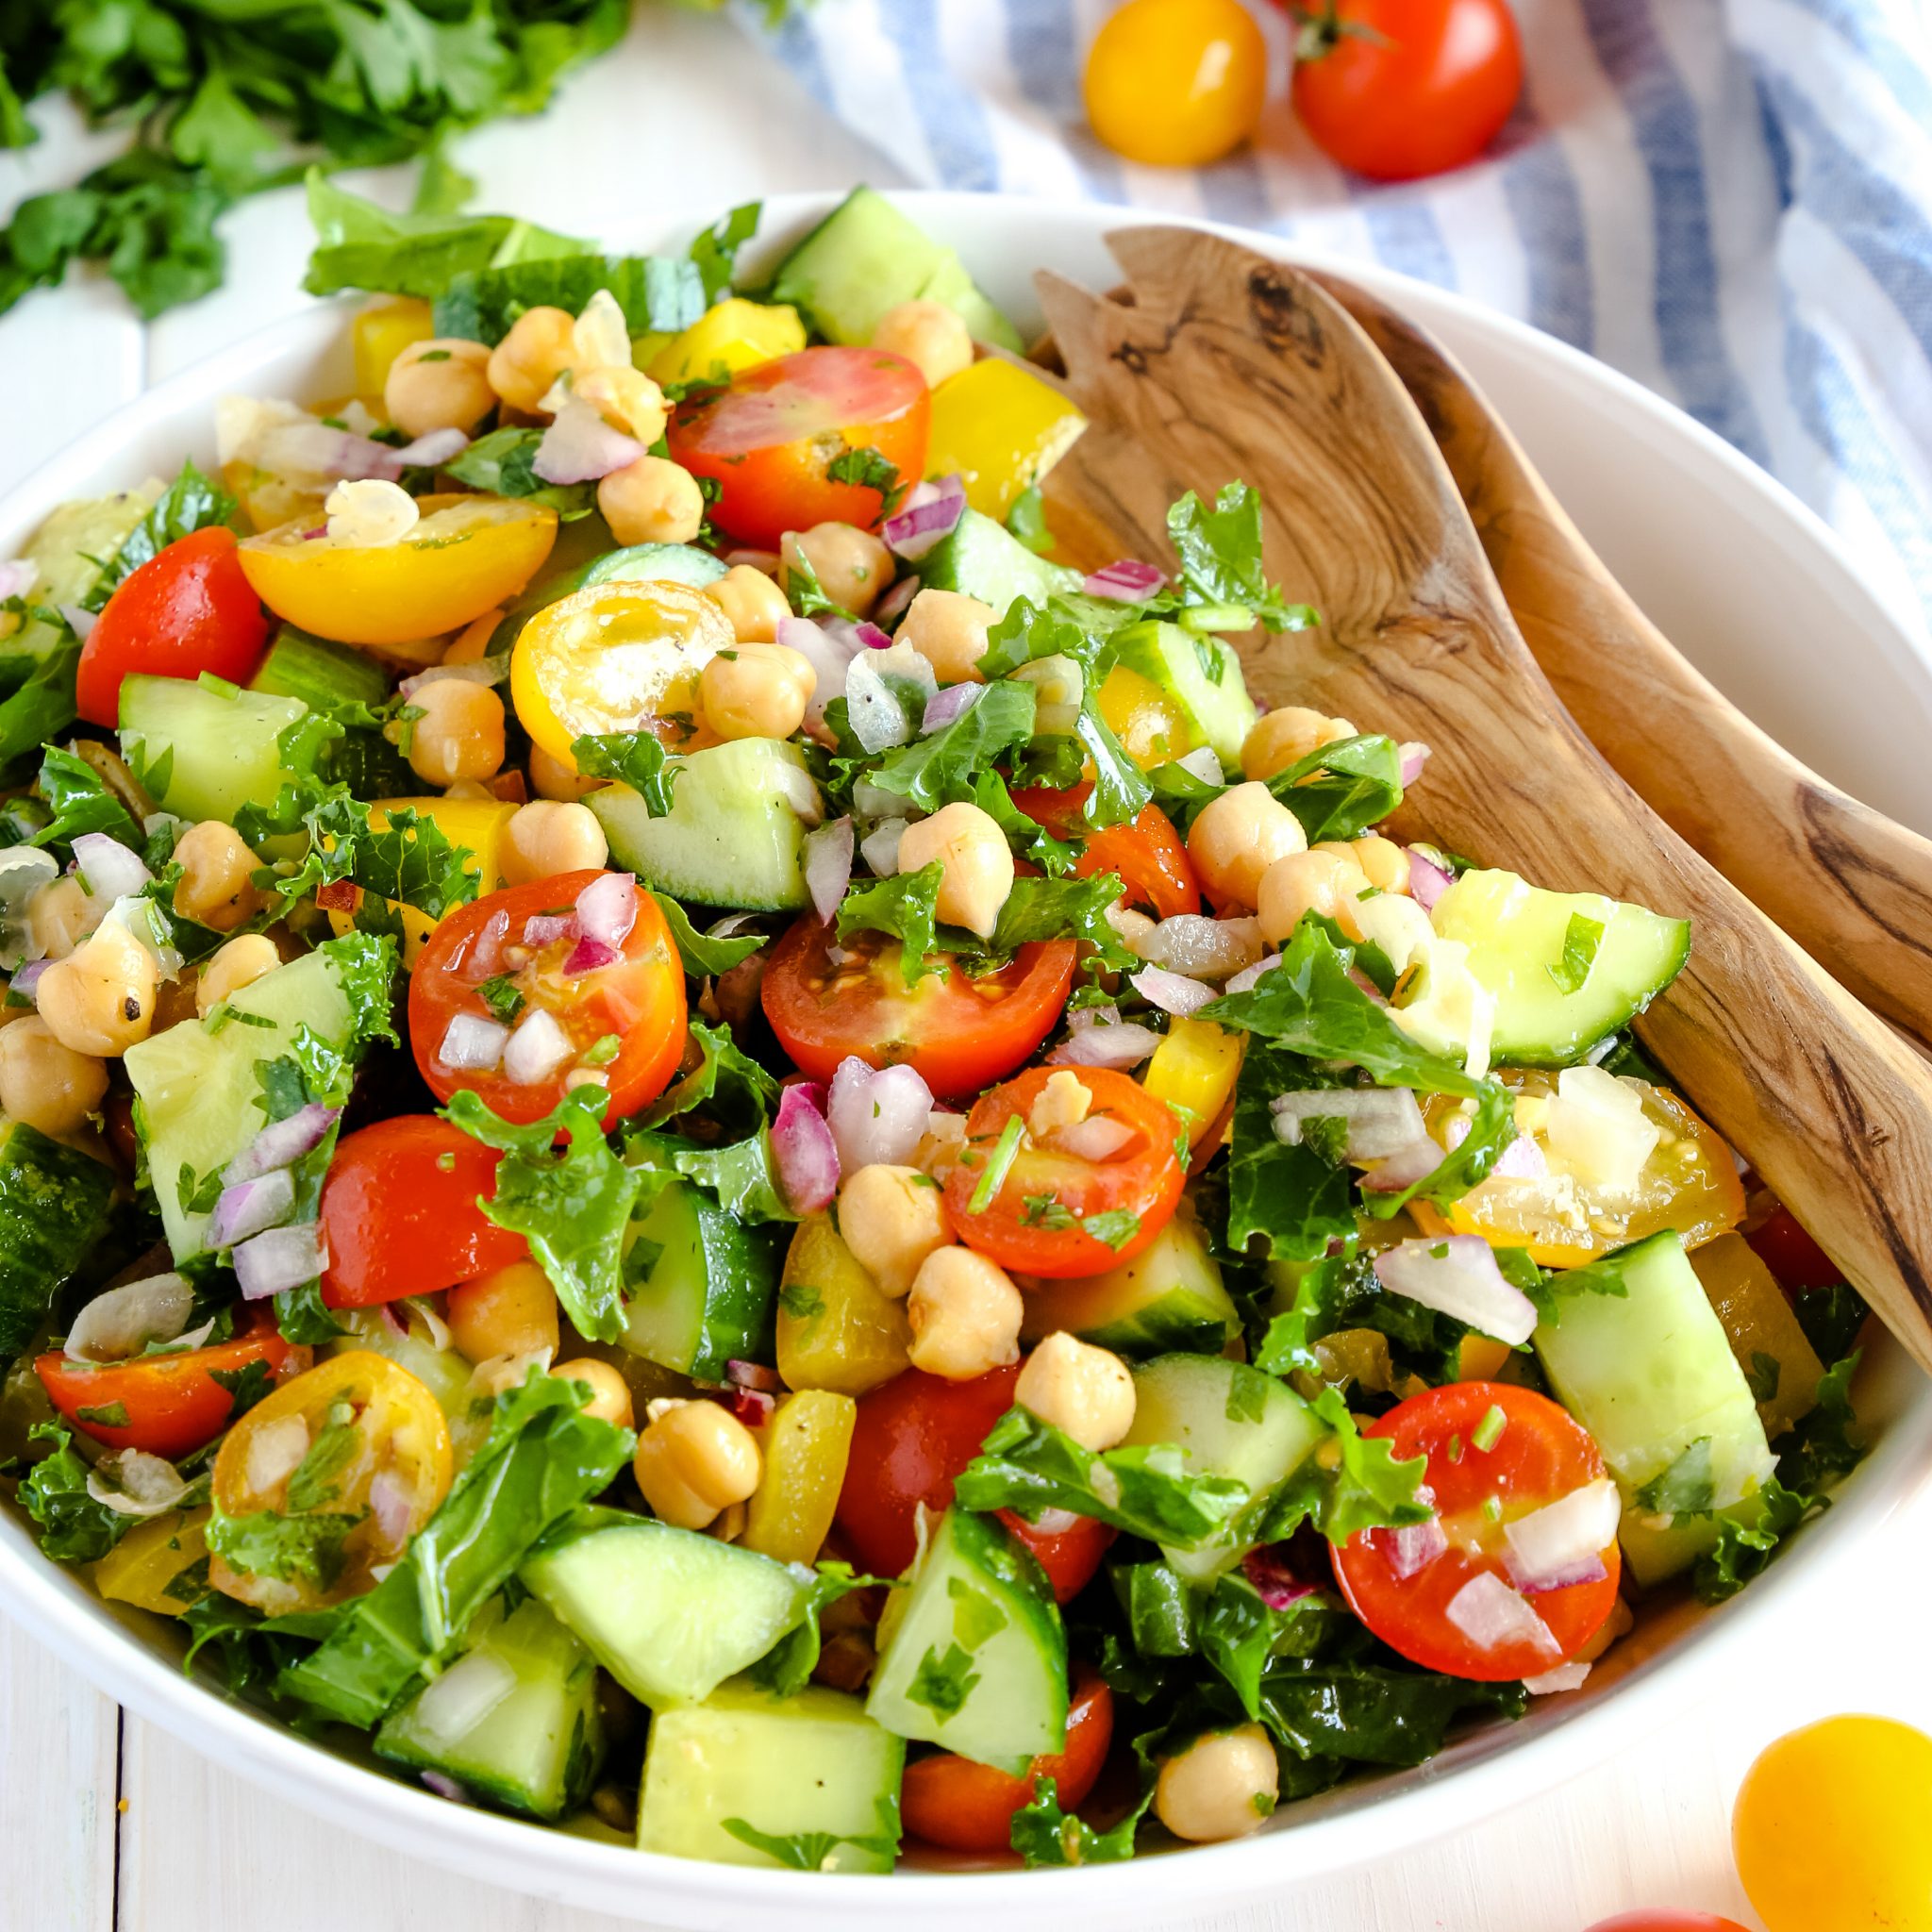 Resep Salad Sayur Diet: Panduan Lengkap untuk Makan Sehat